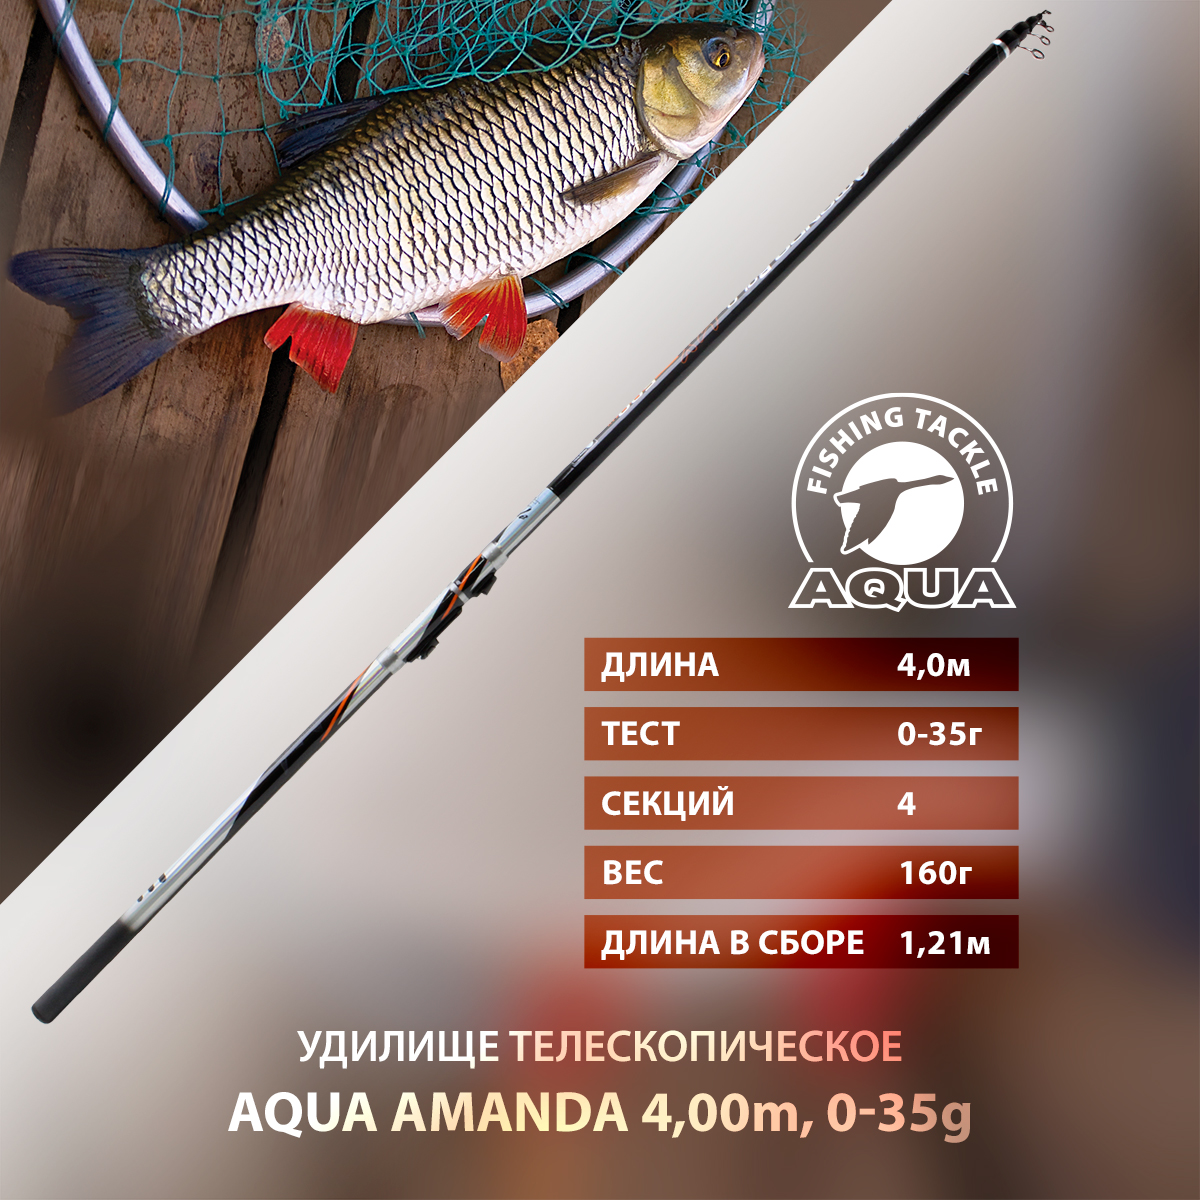 Удилище телескопическое для рыбалки AQUA AMANDA с кольцами